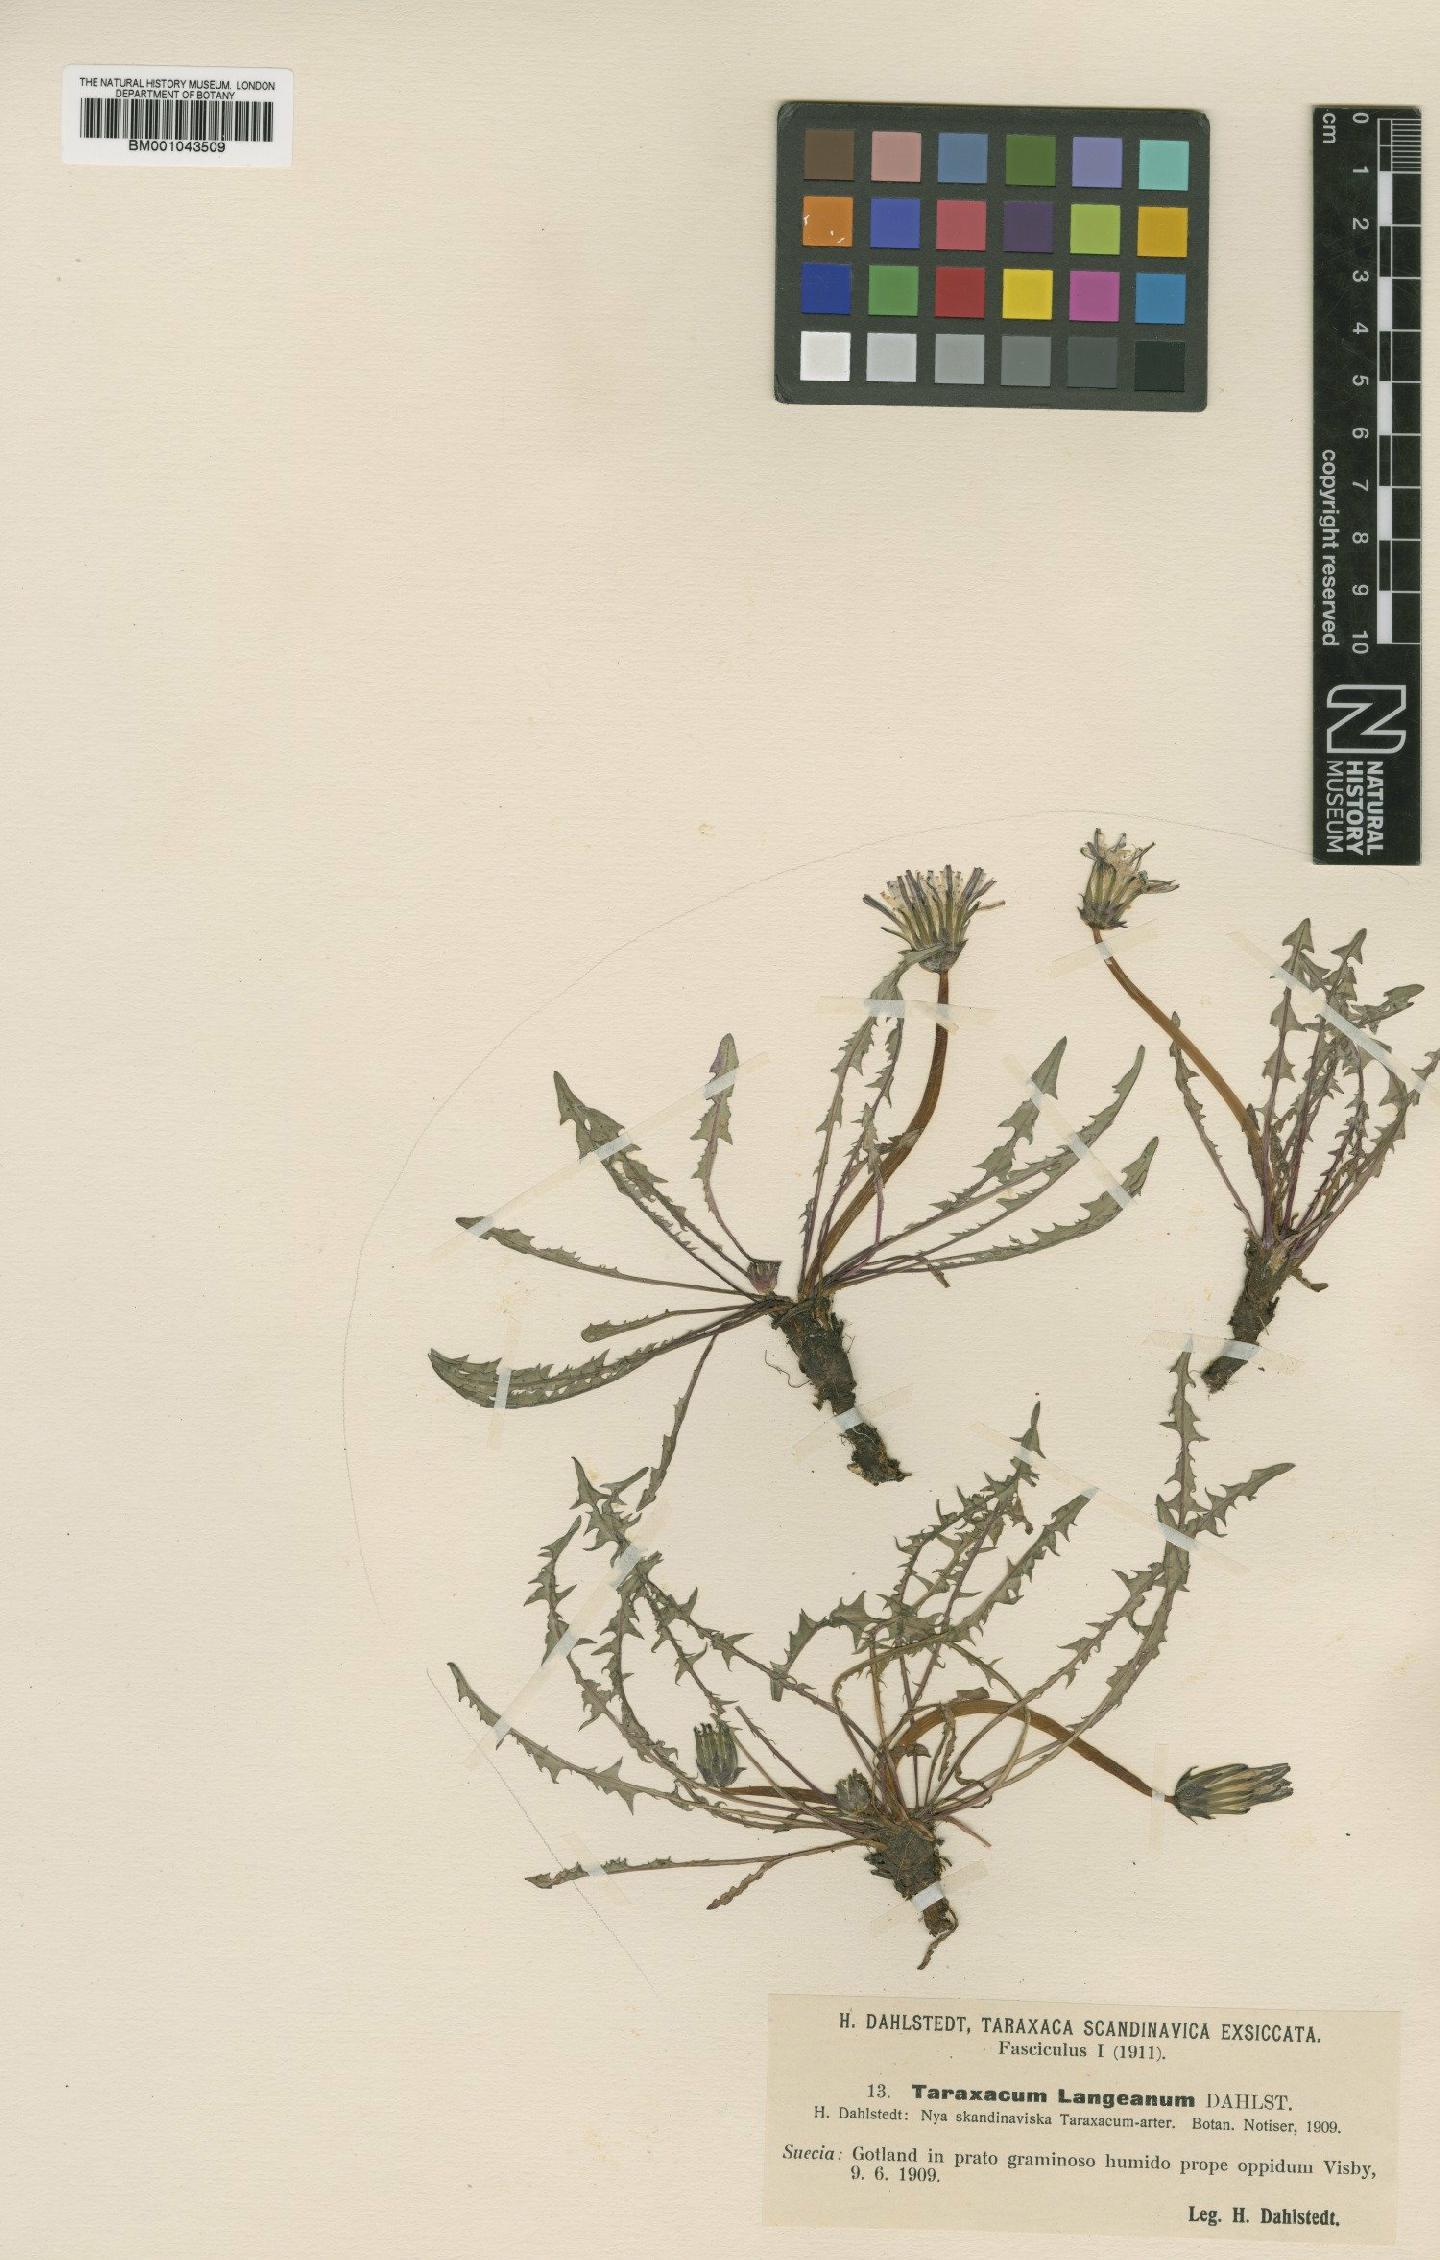 To NHMUK collection (Taraxacum langeanum Dahlst.; Type; NHMUK:ecatalogue:1999230)